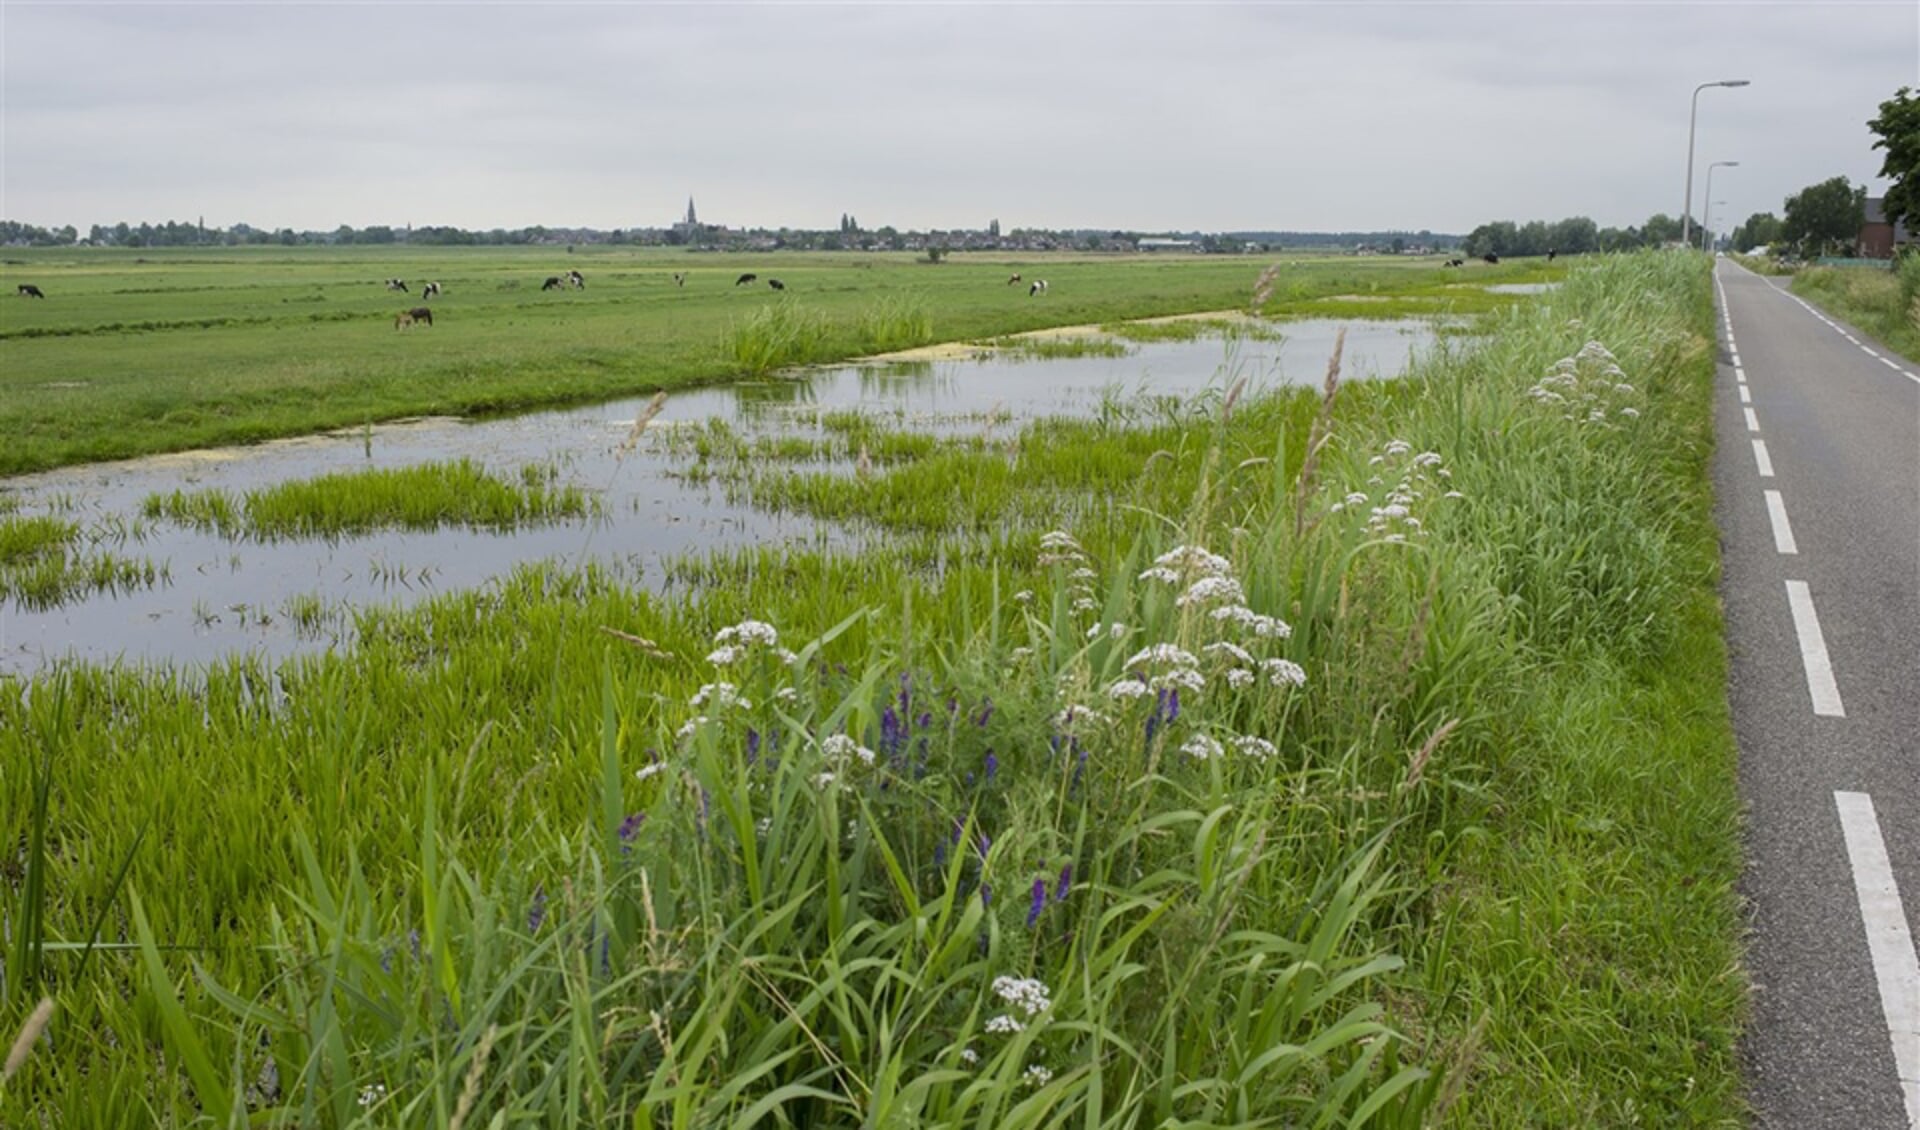 Zuid-Holland heeft met bodemdaling te maken, ook in Nieuwerkerk. Hier ligt het laagste punt (bijna zeven meter onder NAP) van Nederland.